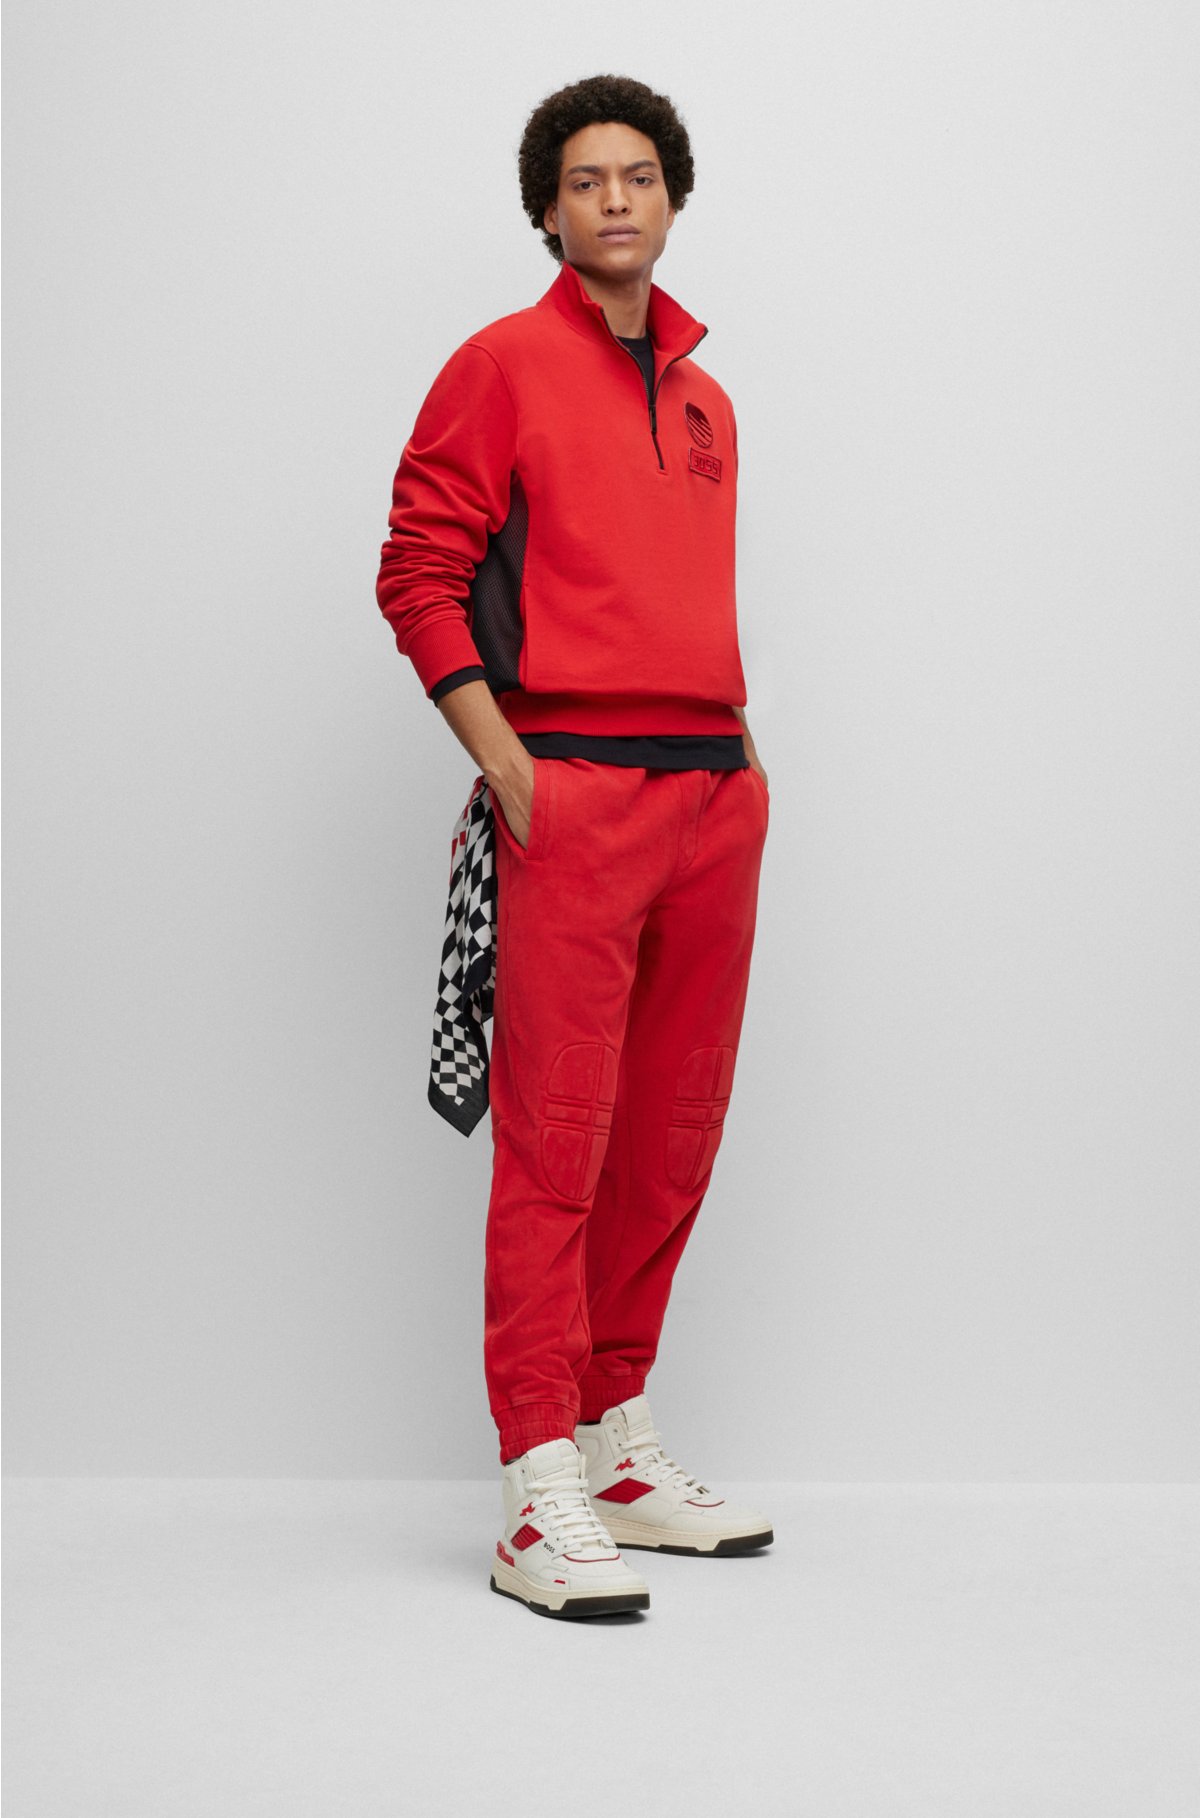 Cotton-terry zip-neck sweatshirt with racing-inspired details, Red